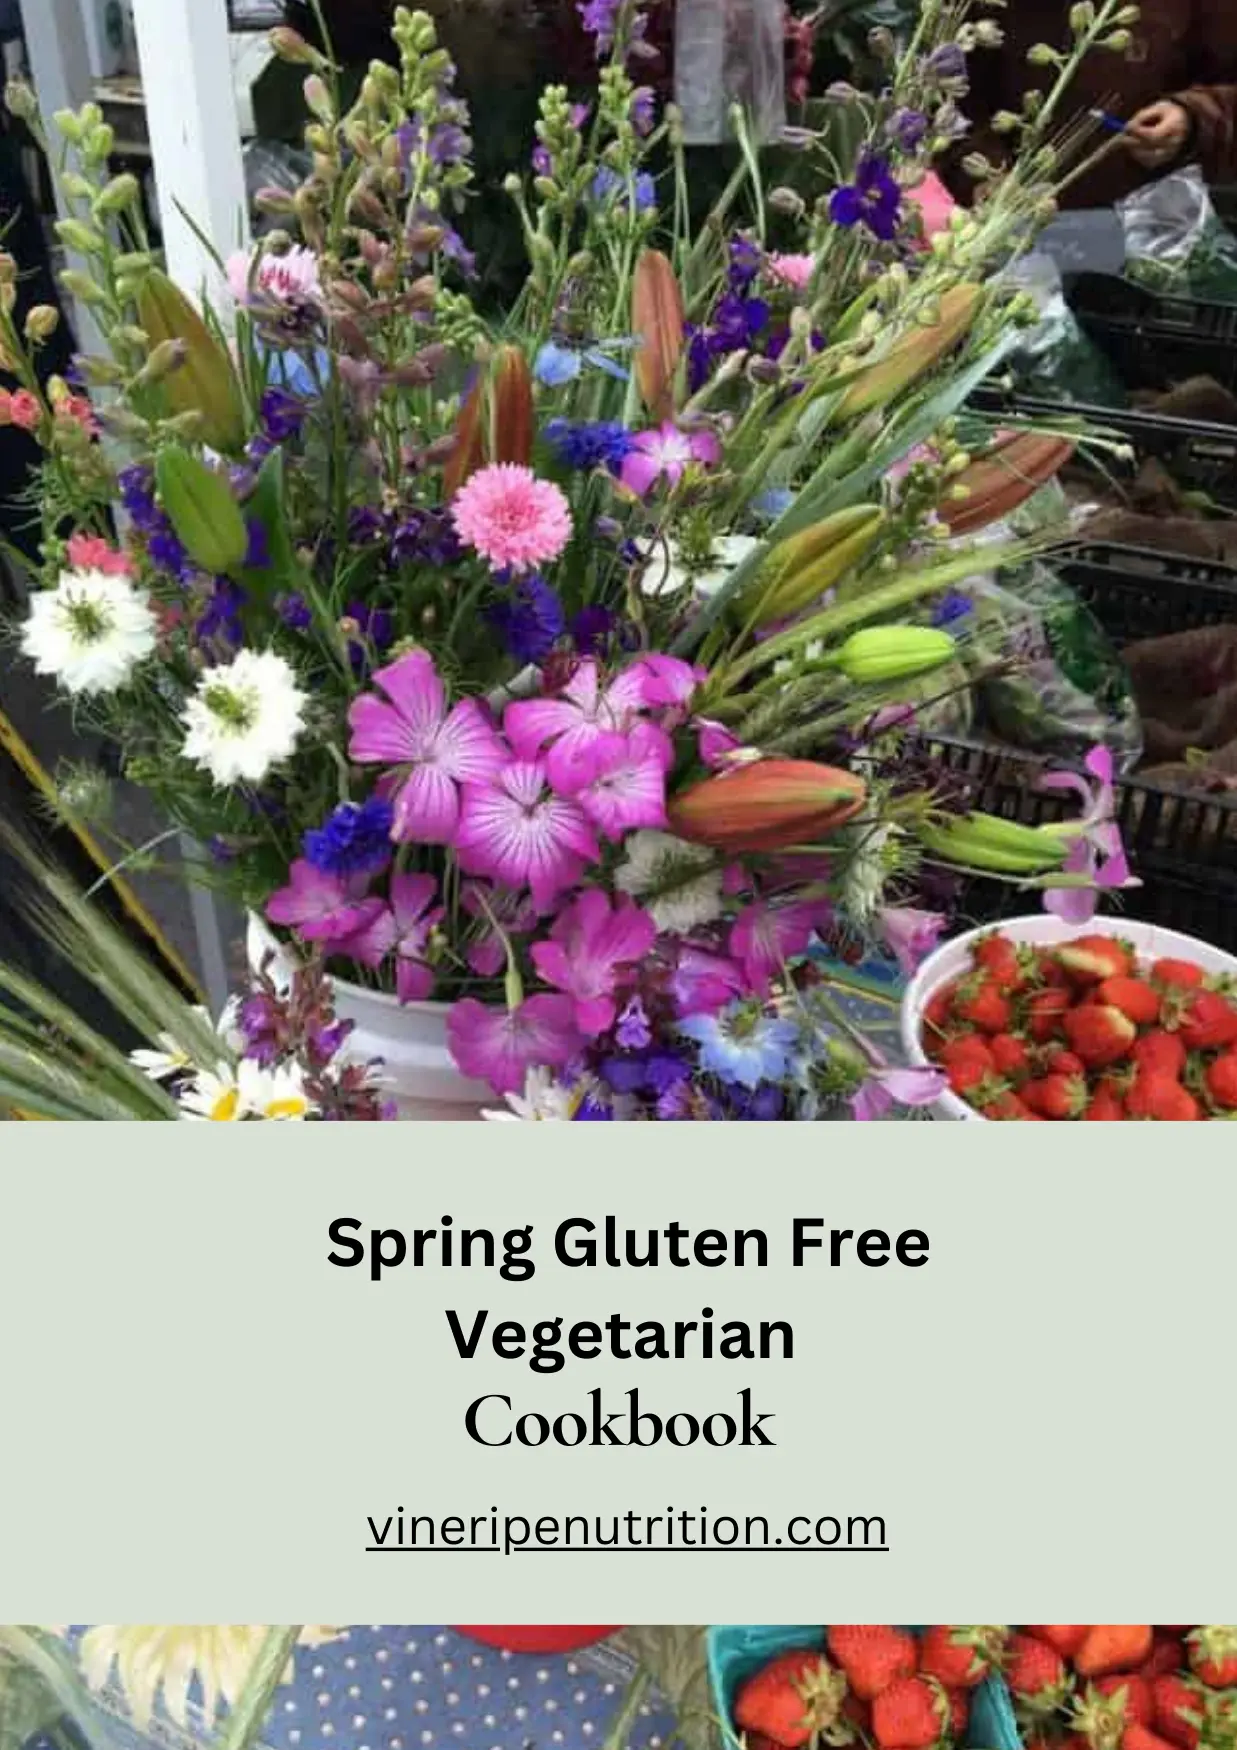 Spring Gluten Free Vegetarian Cookbook